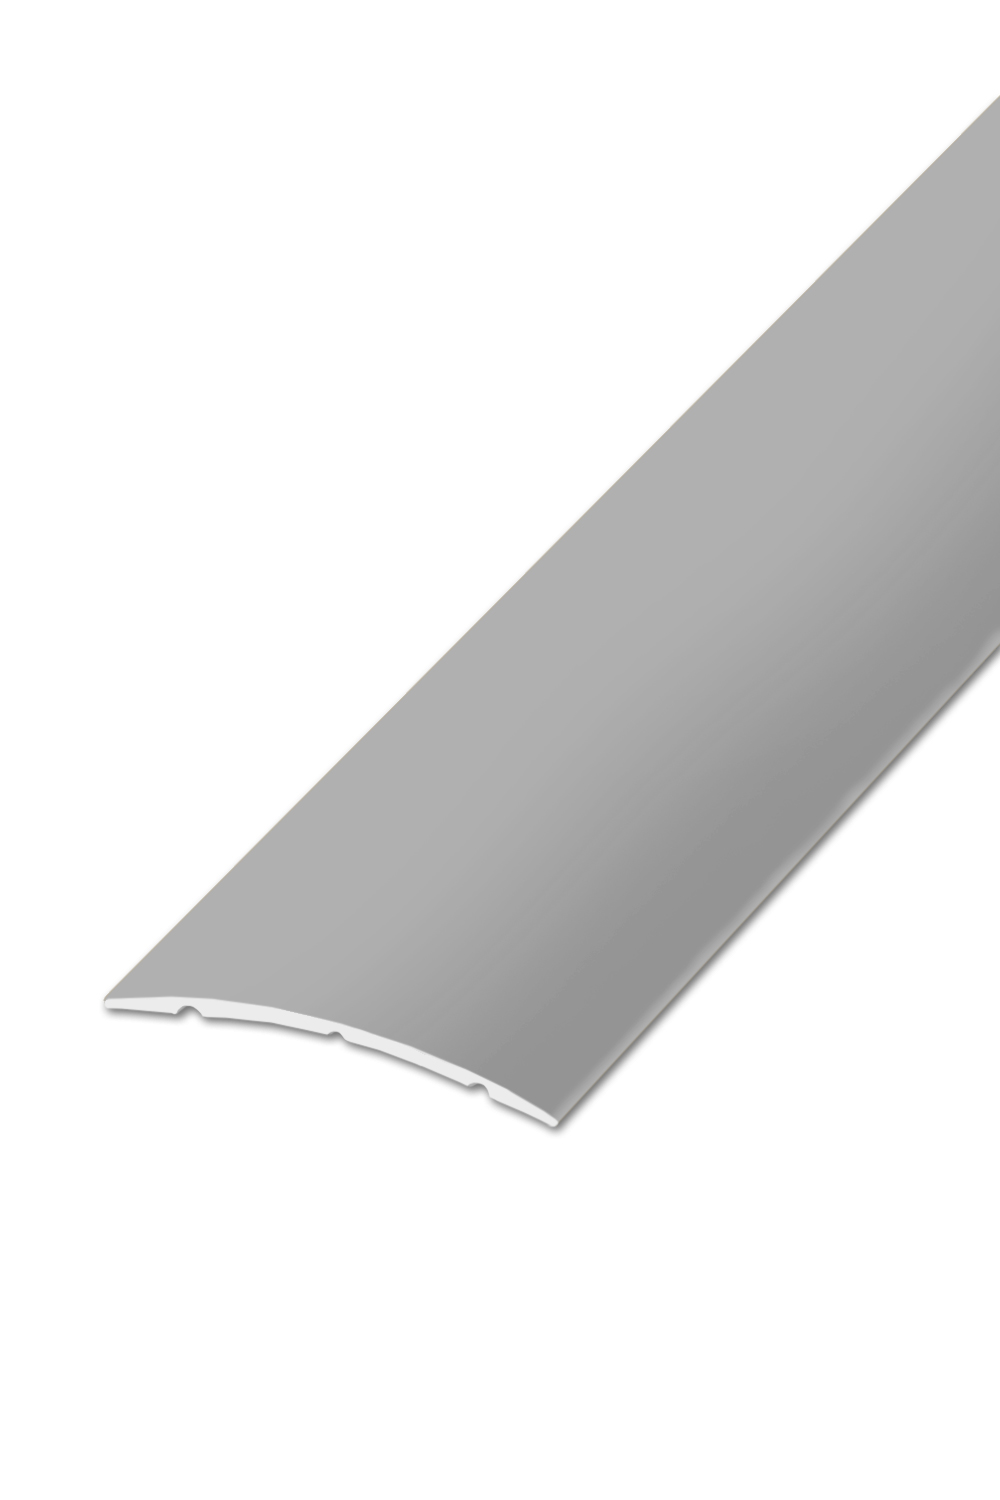 Přechodová lišta STANDARD 32 - Stříbrná 90 cm